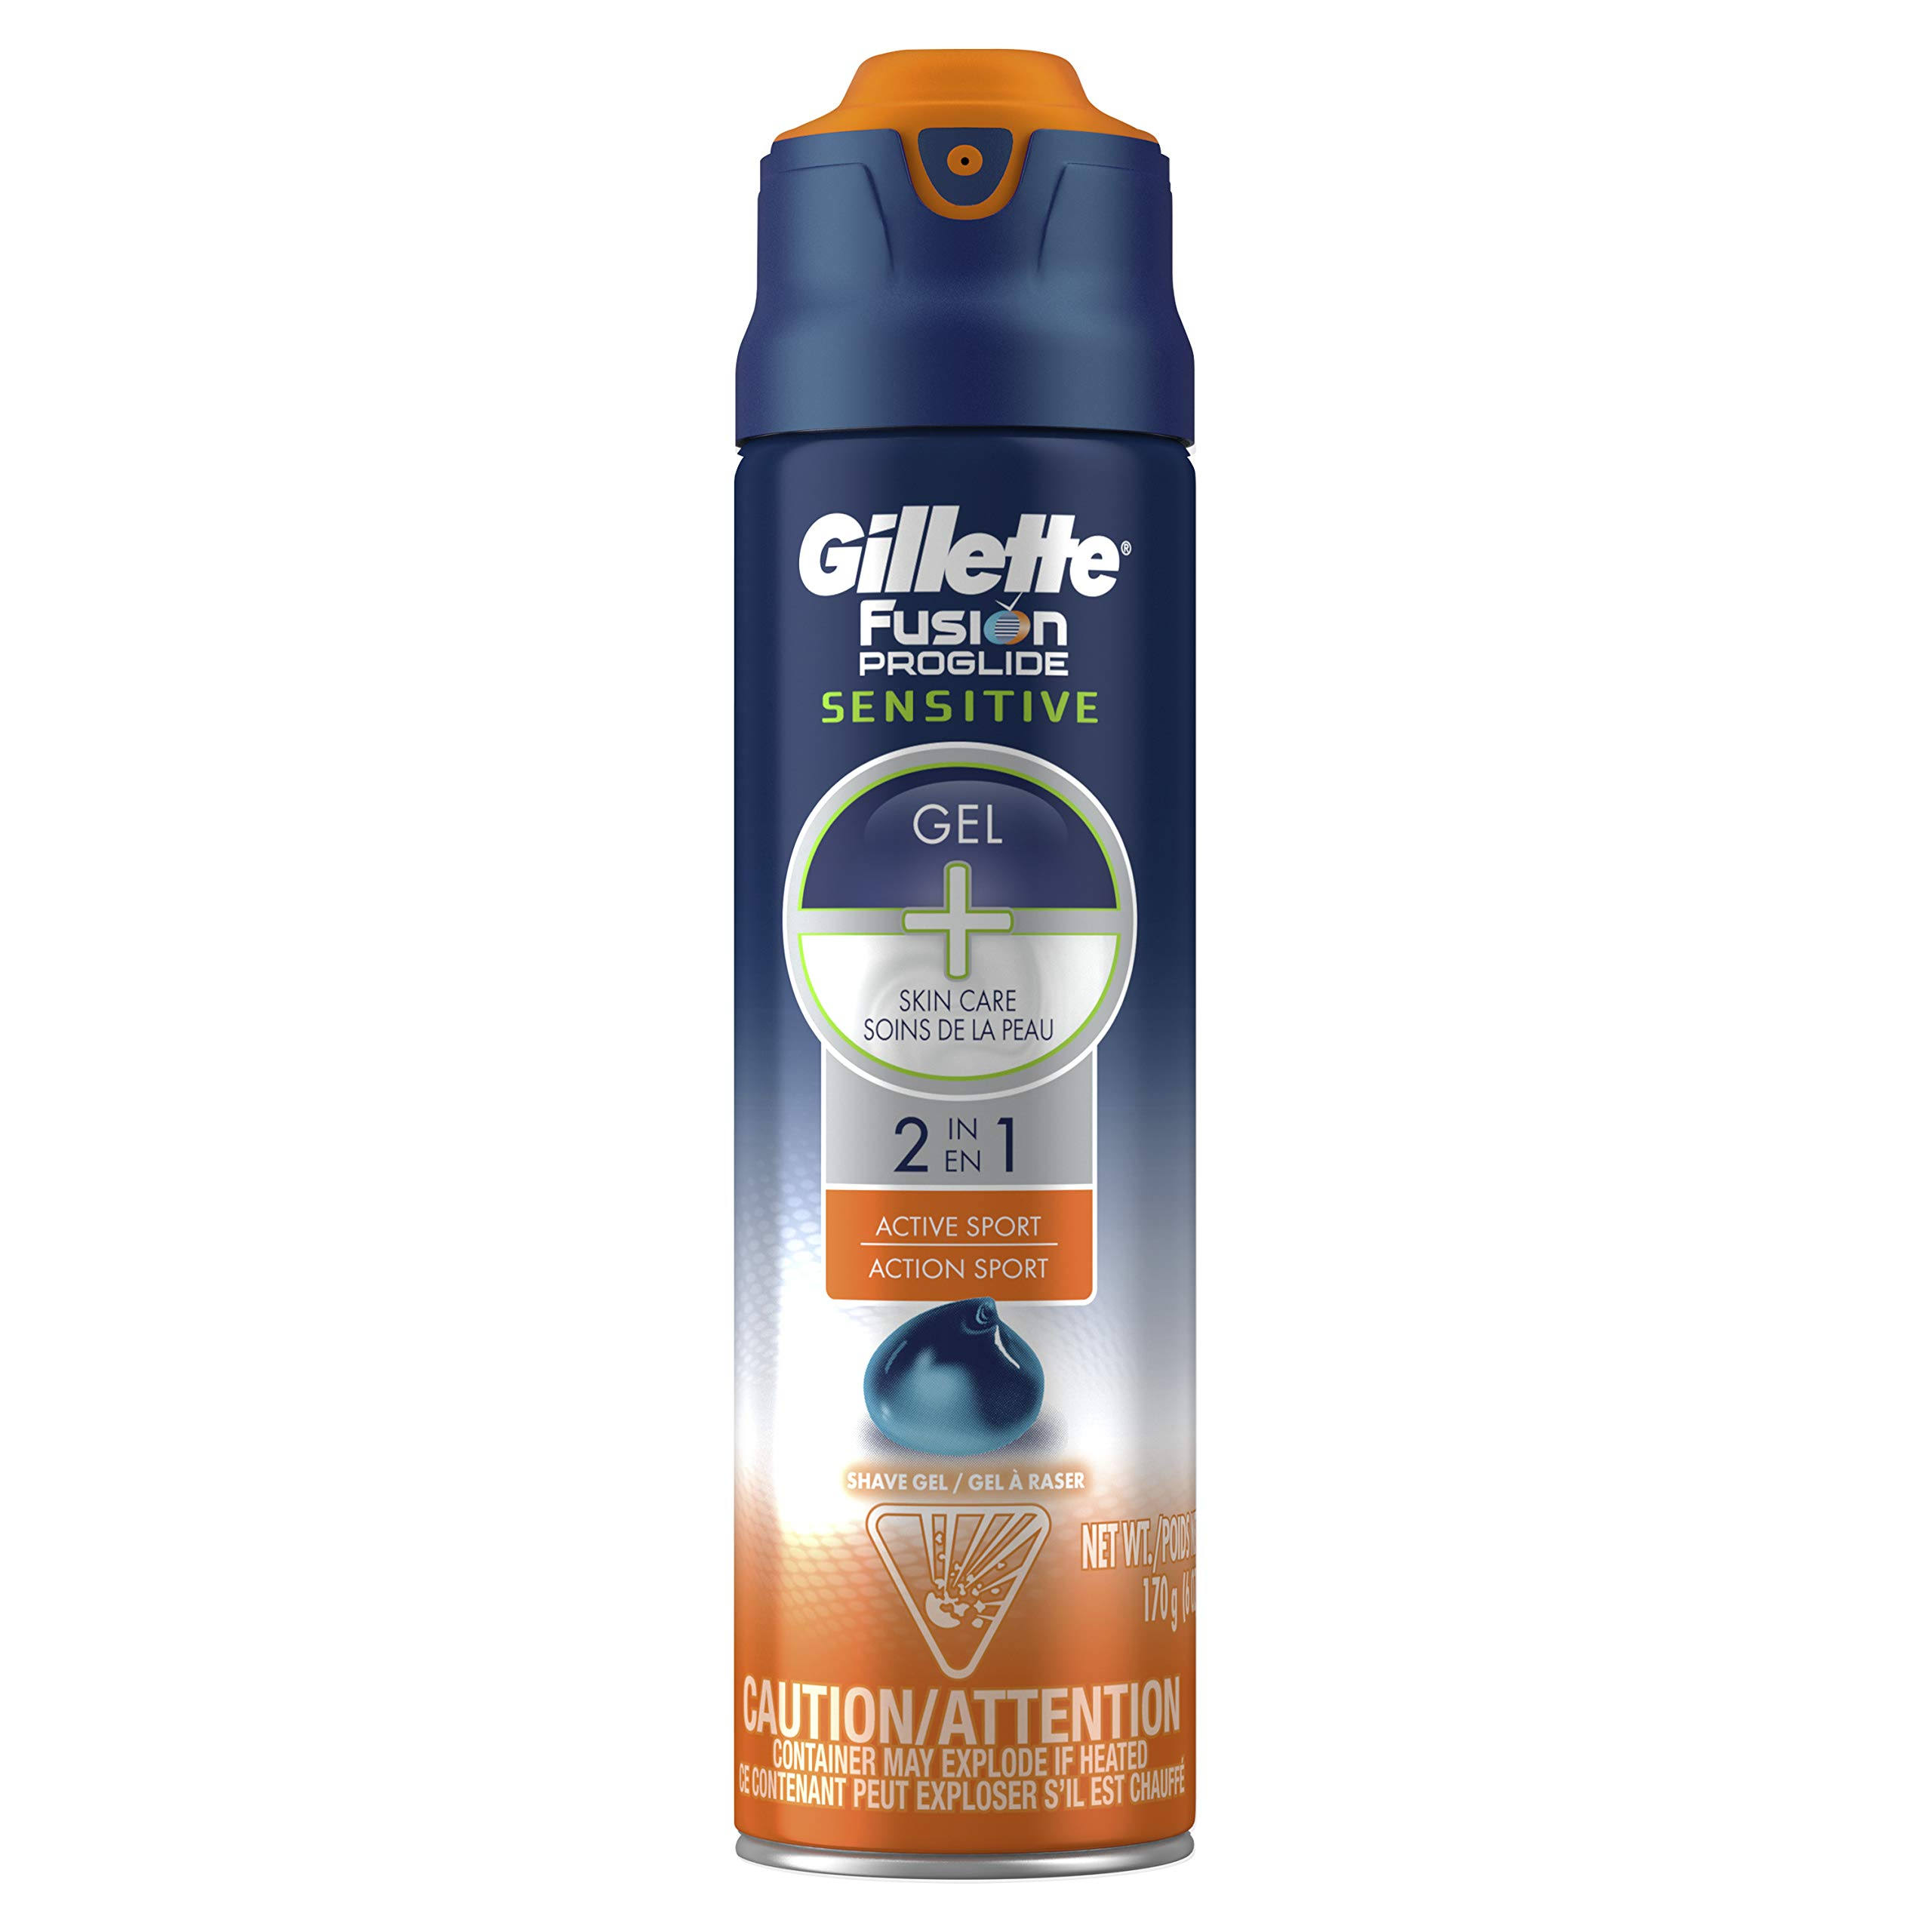 Gillette Fusion Proglide Sensitive 2 in 1 Active Sport Shave Gel - 6oz